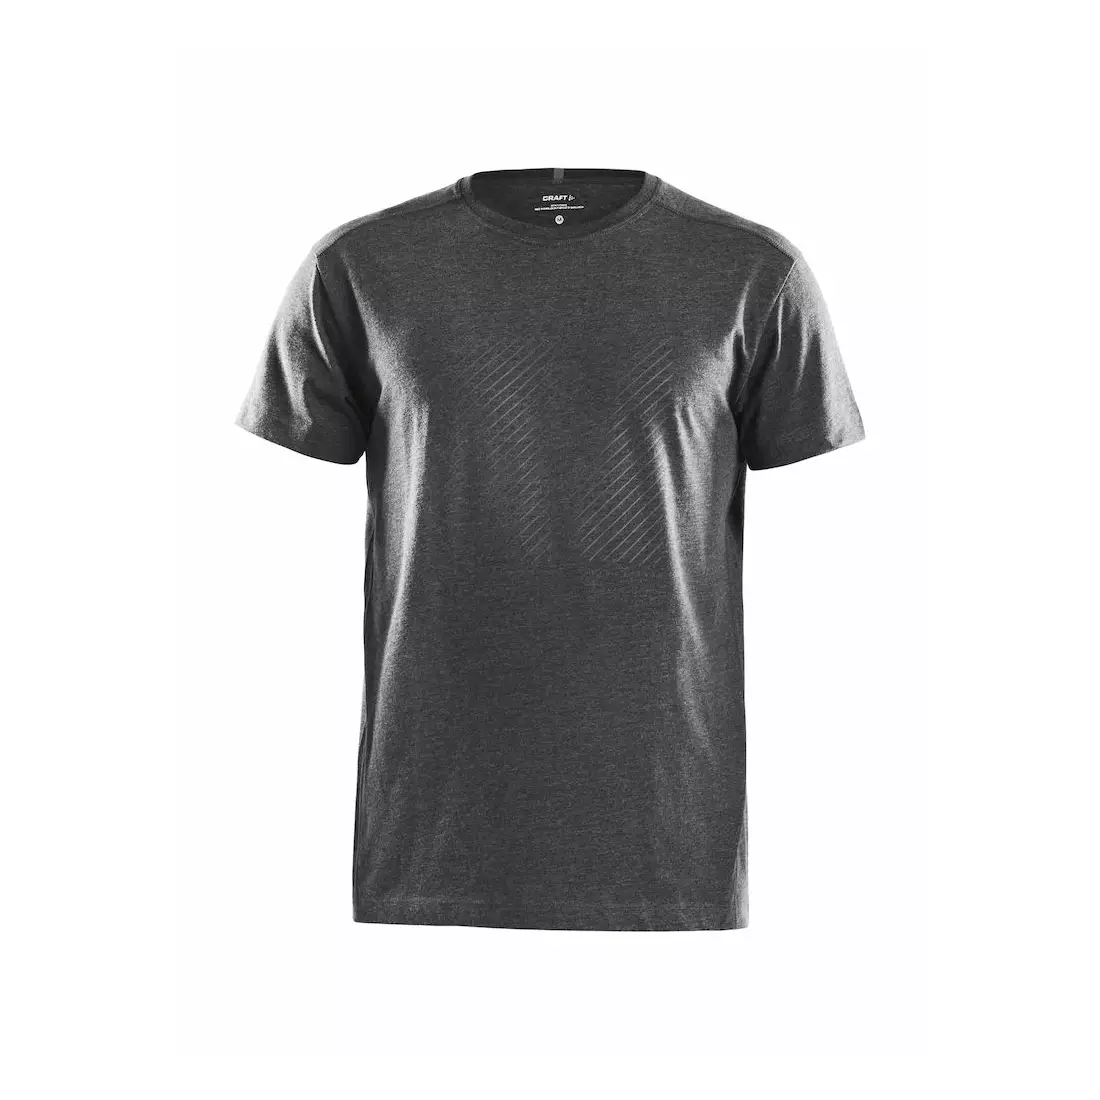 CRAFT DEFT Man's Sport T-Shirt 1905899-975200